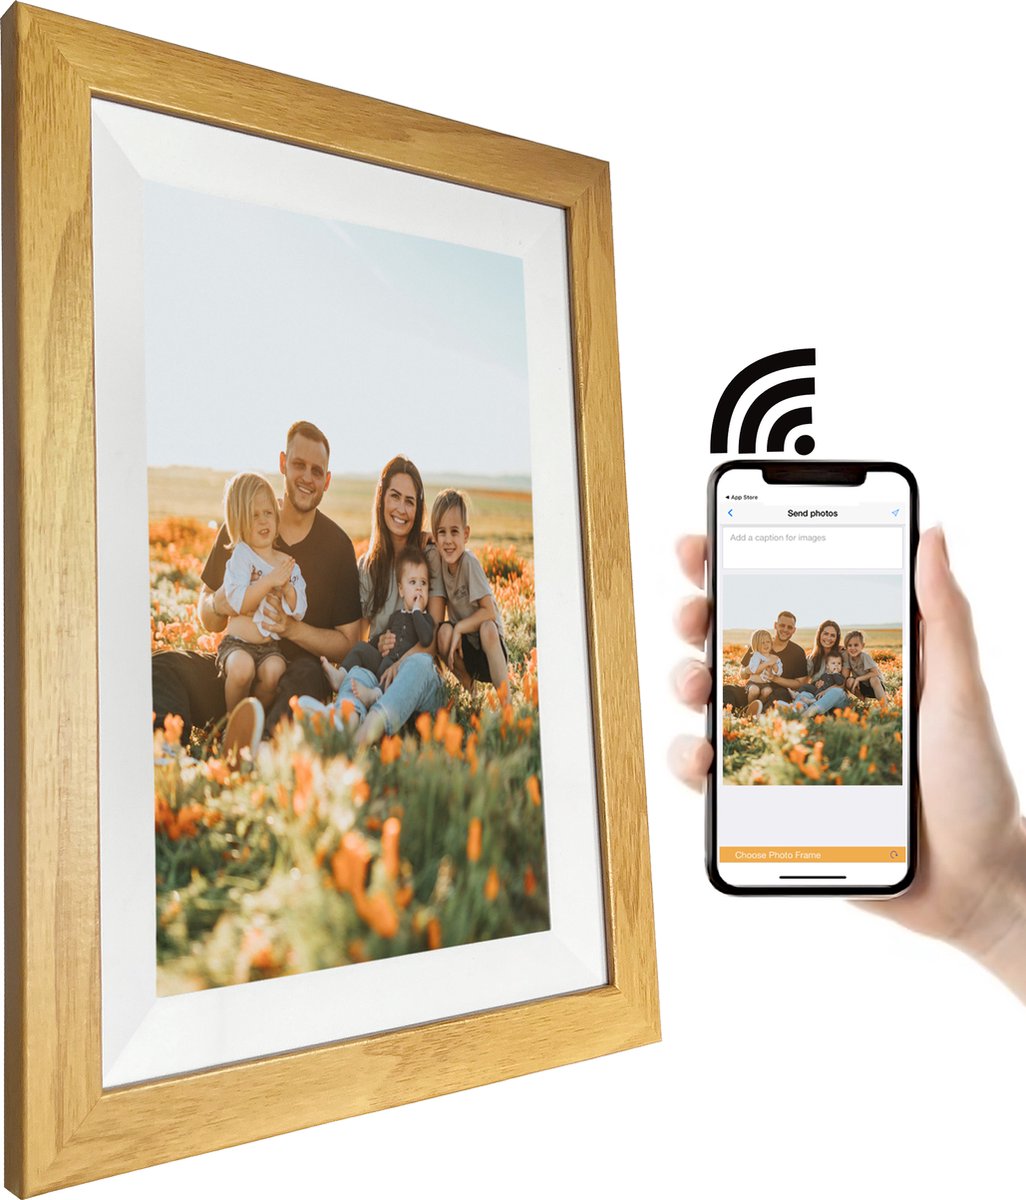 Flient Digitale fotolijst - Met app - Houten Frame - Full HD - 10.1 inch - WiFi - Touch screen